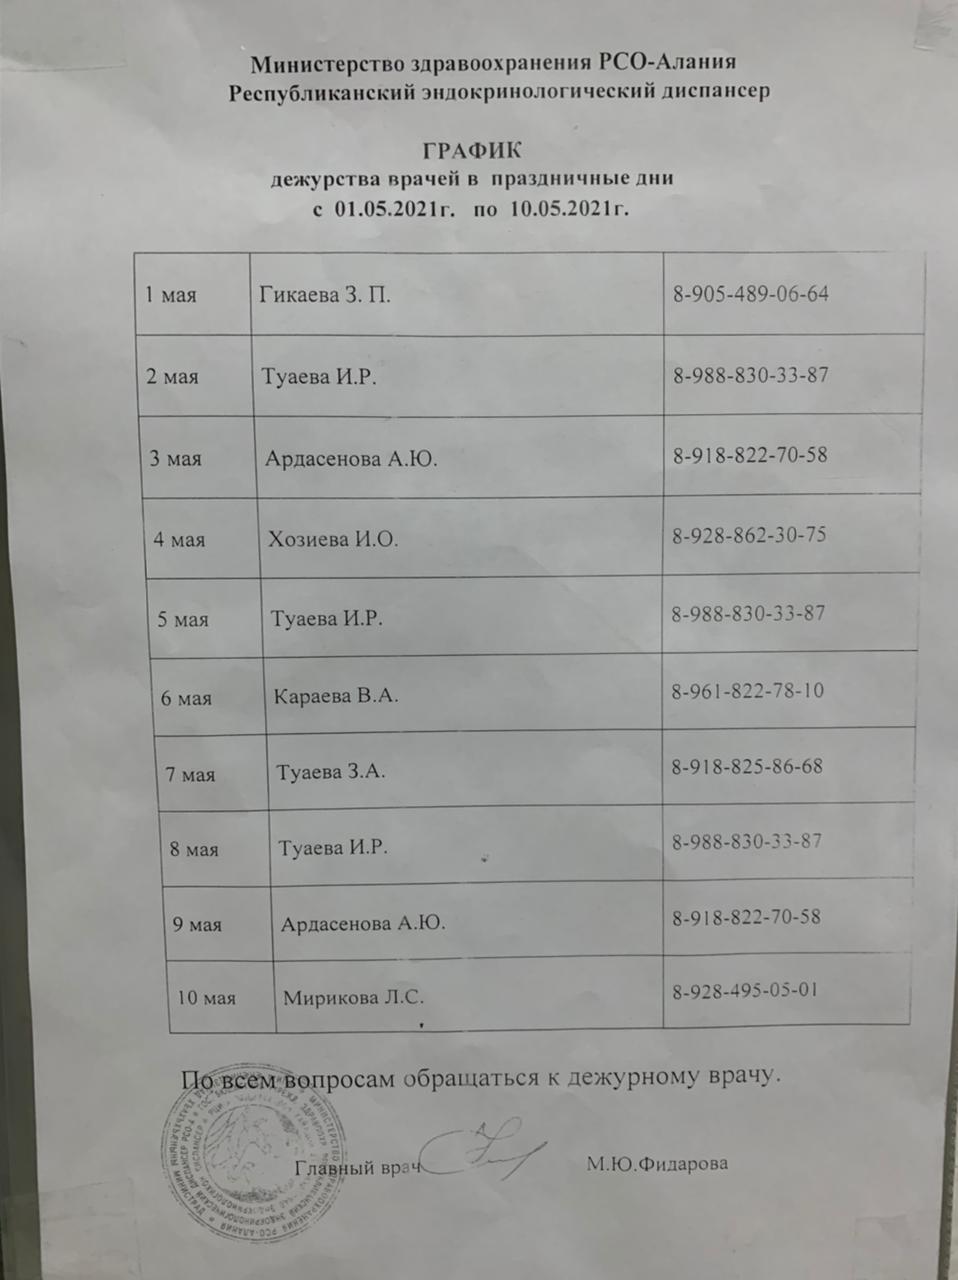 График дежурства врачей в Праздничные дни с 01.05.2021 по 10.05.2021